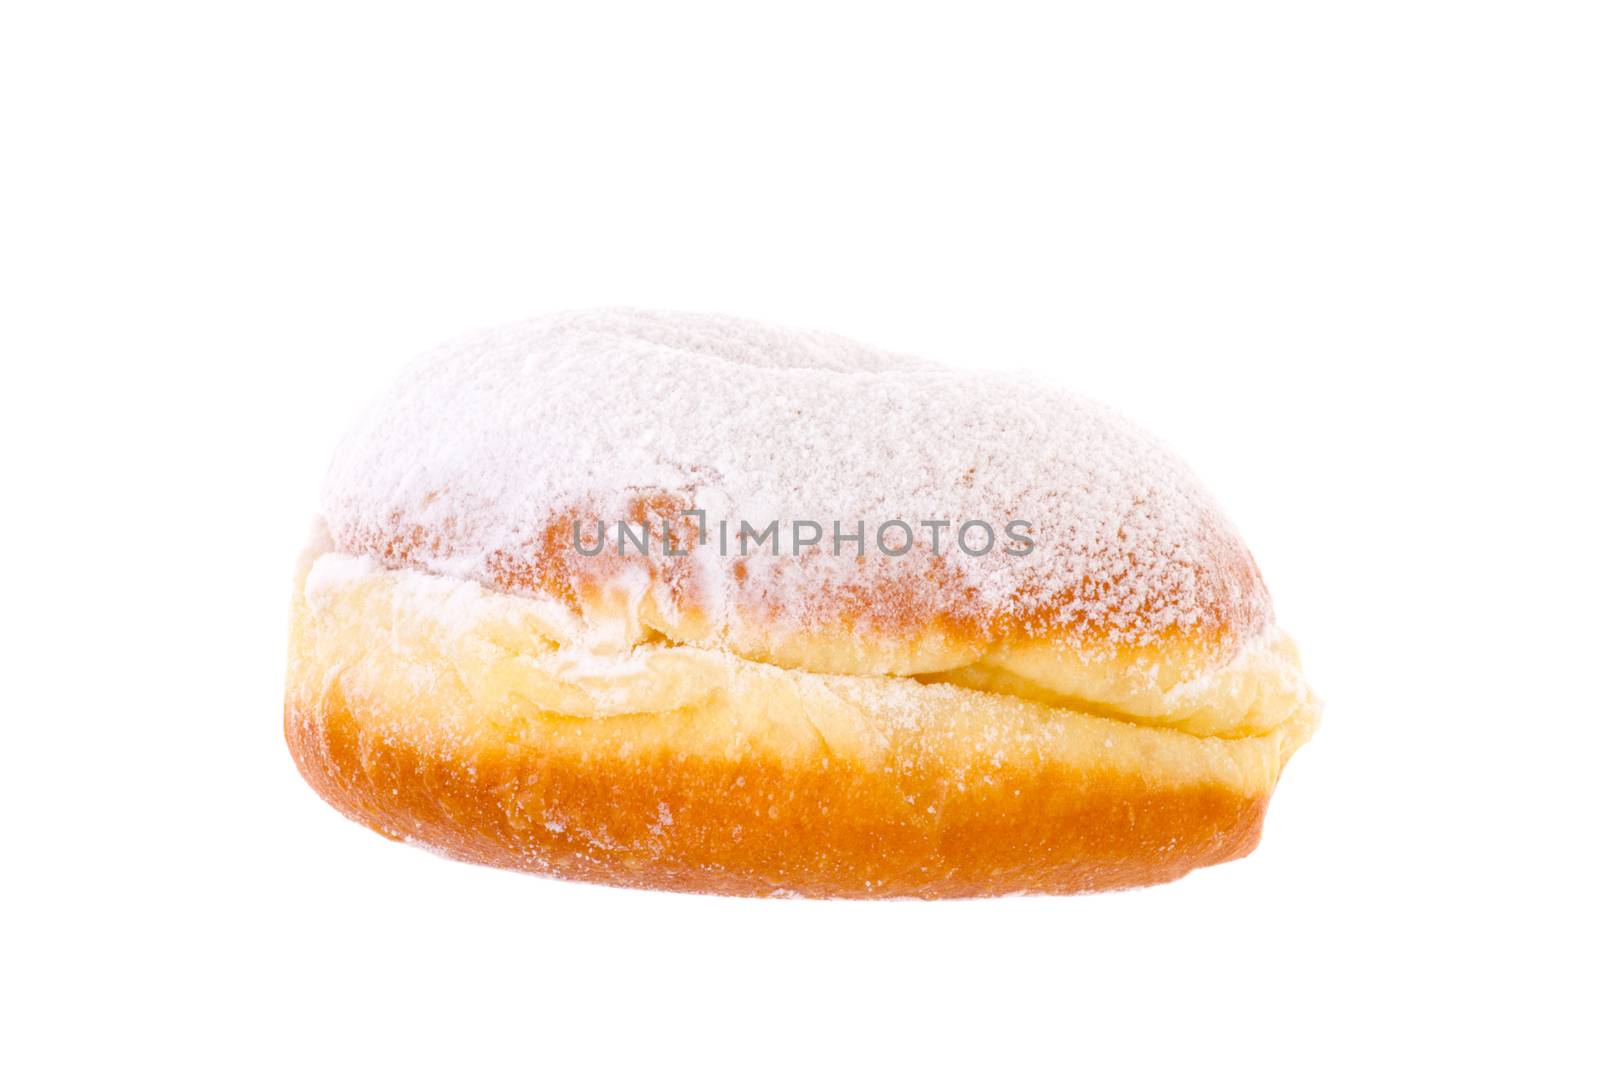 Krapfen Berliner Pfannkuchen Bismarck Donut brightened by gwolters